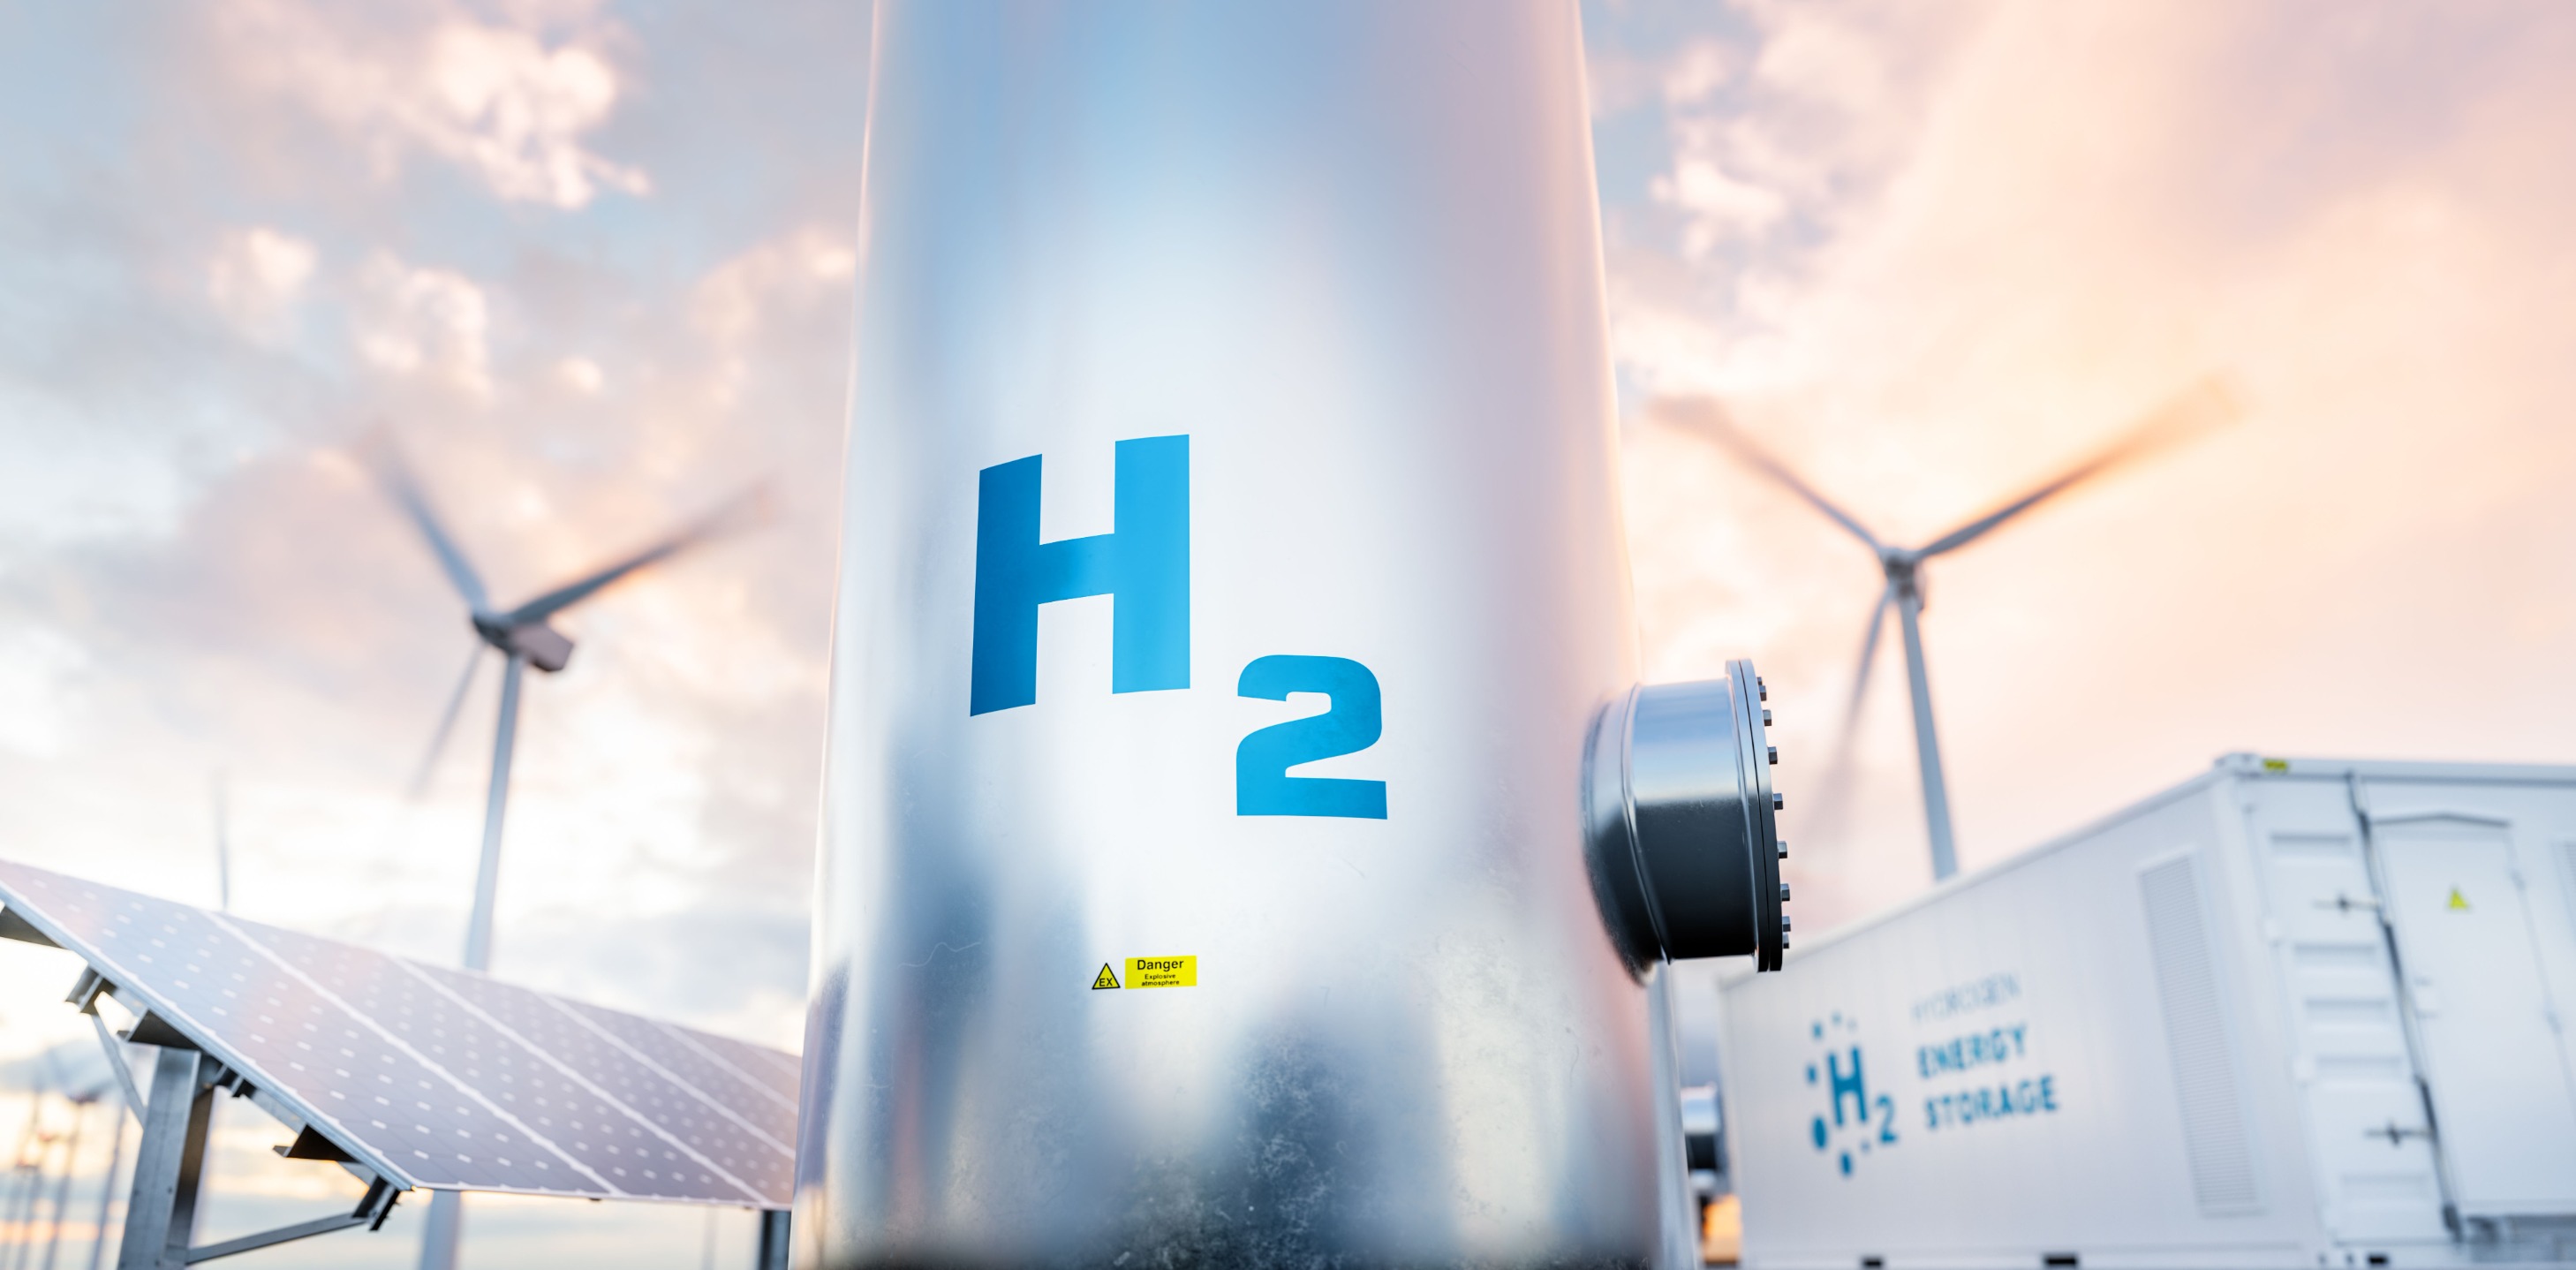 η αίγυπτος υπέγραψε 7 μνημόνια συνεργασίας με διεθνείς εταιρείες για πράσινο υδρογόνο - ύψους 40 δισ